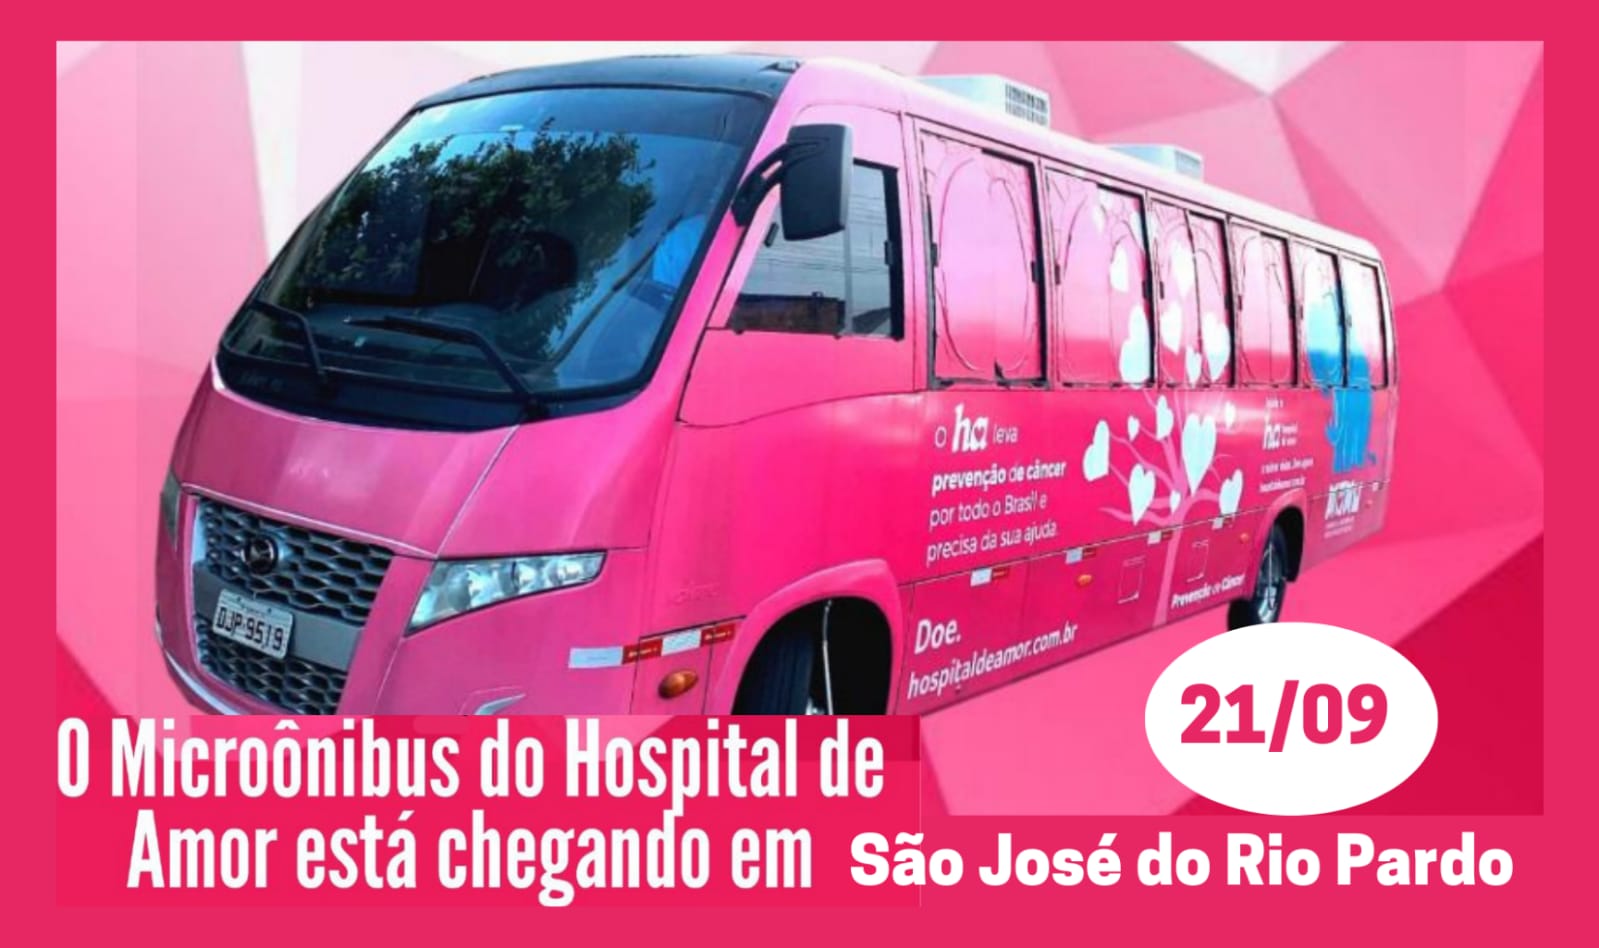 Como chegar até Cd Drogaria São Paulo Osasco de Ônibus?